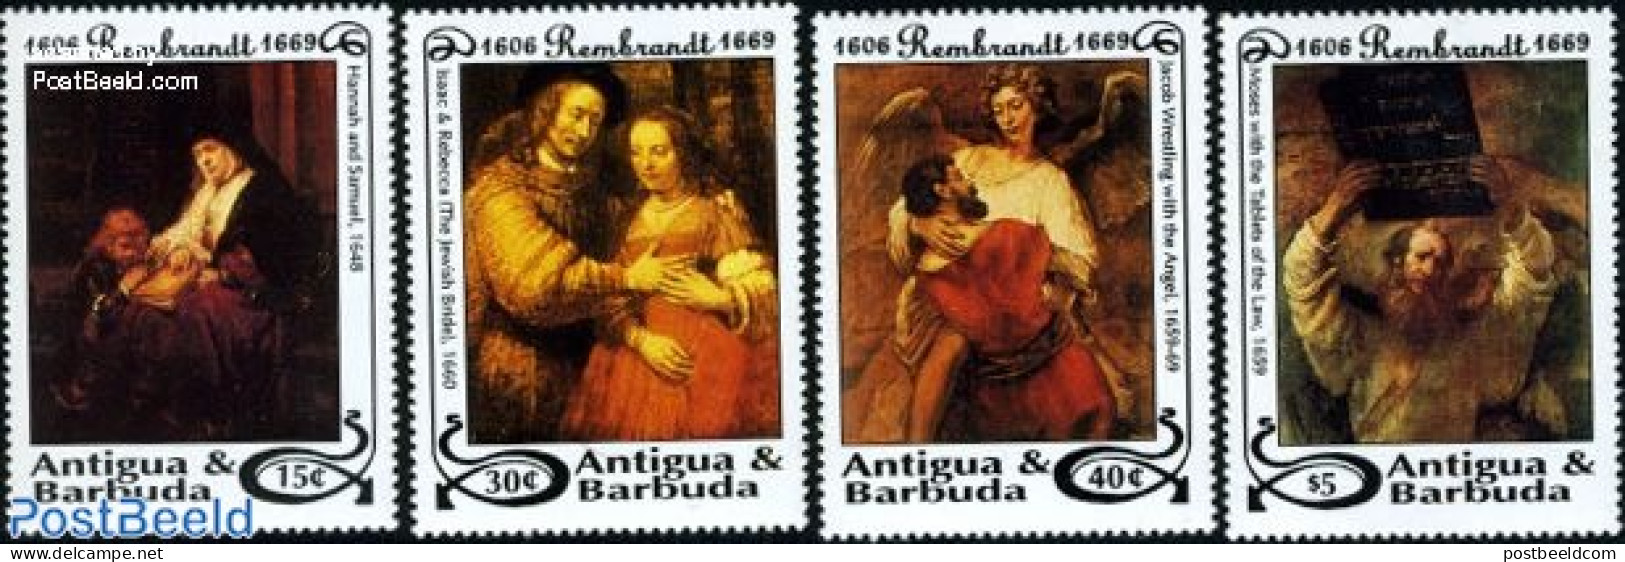 Antigua & Barbuda 1993 Rembrandt 4v, Mint NH, Art - Paintings - Rembrandt - Antigua En Barbuda (1981-...)